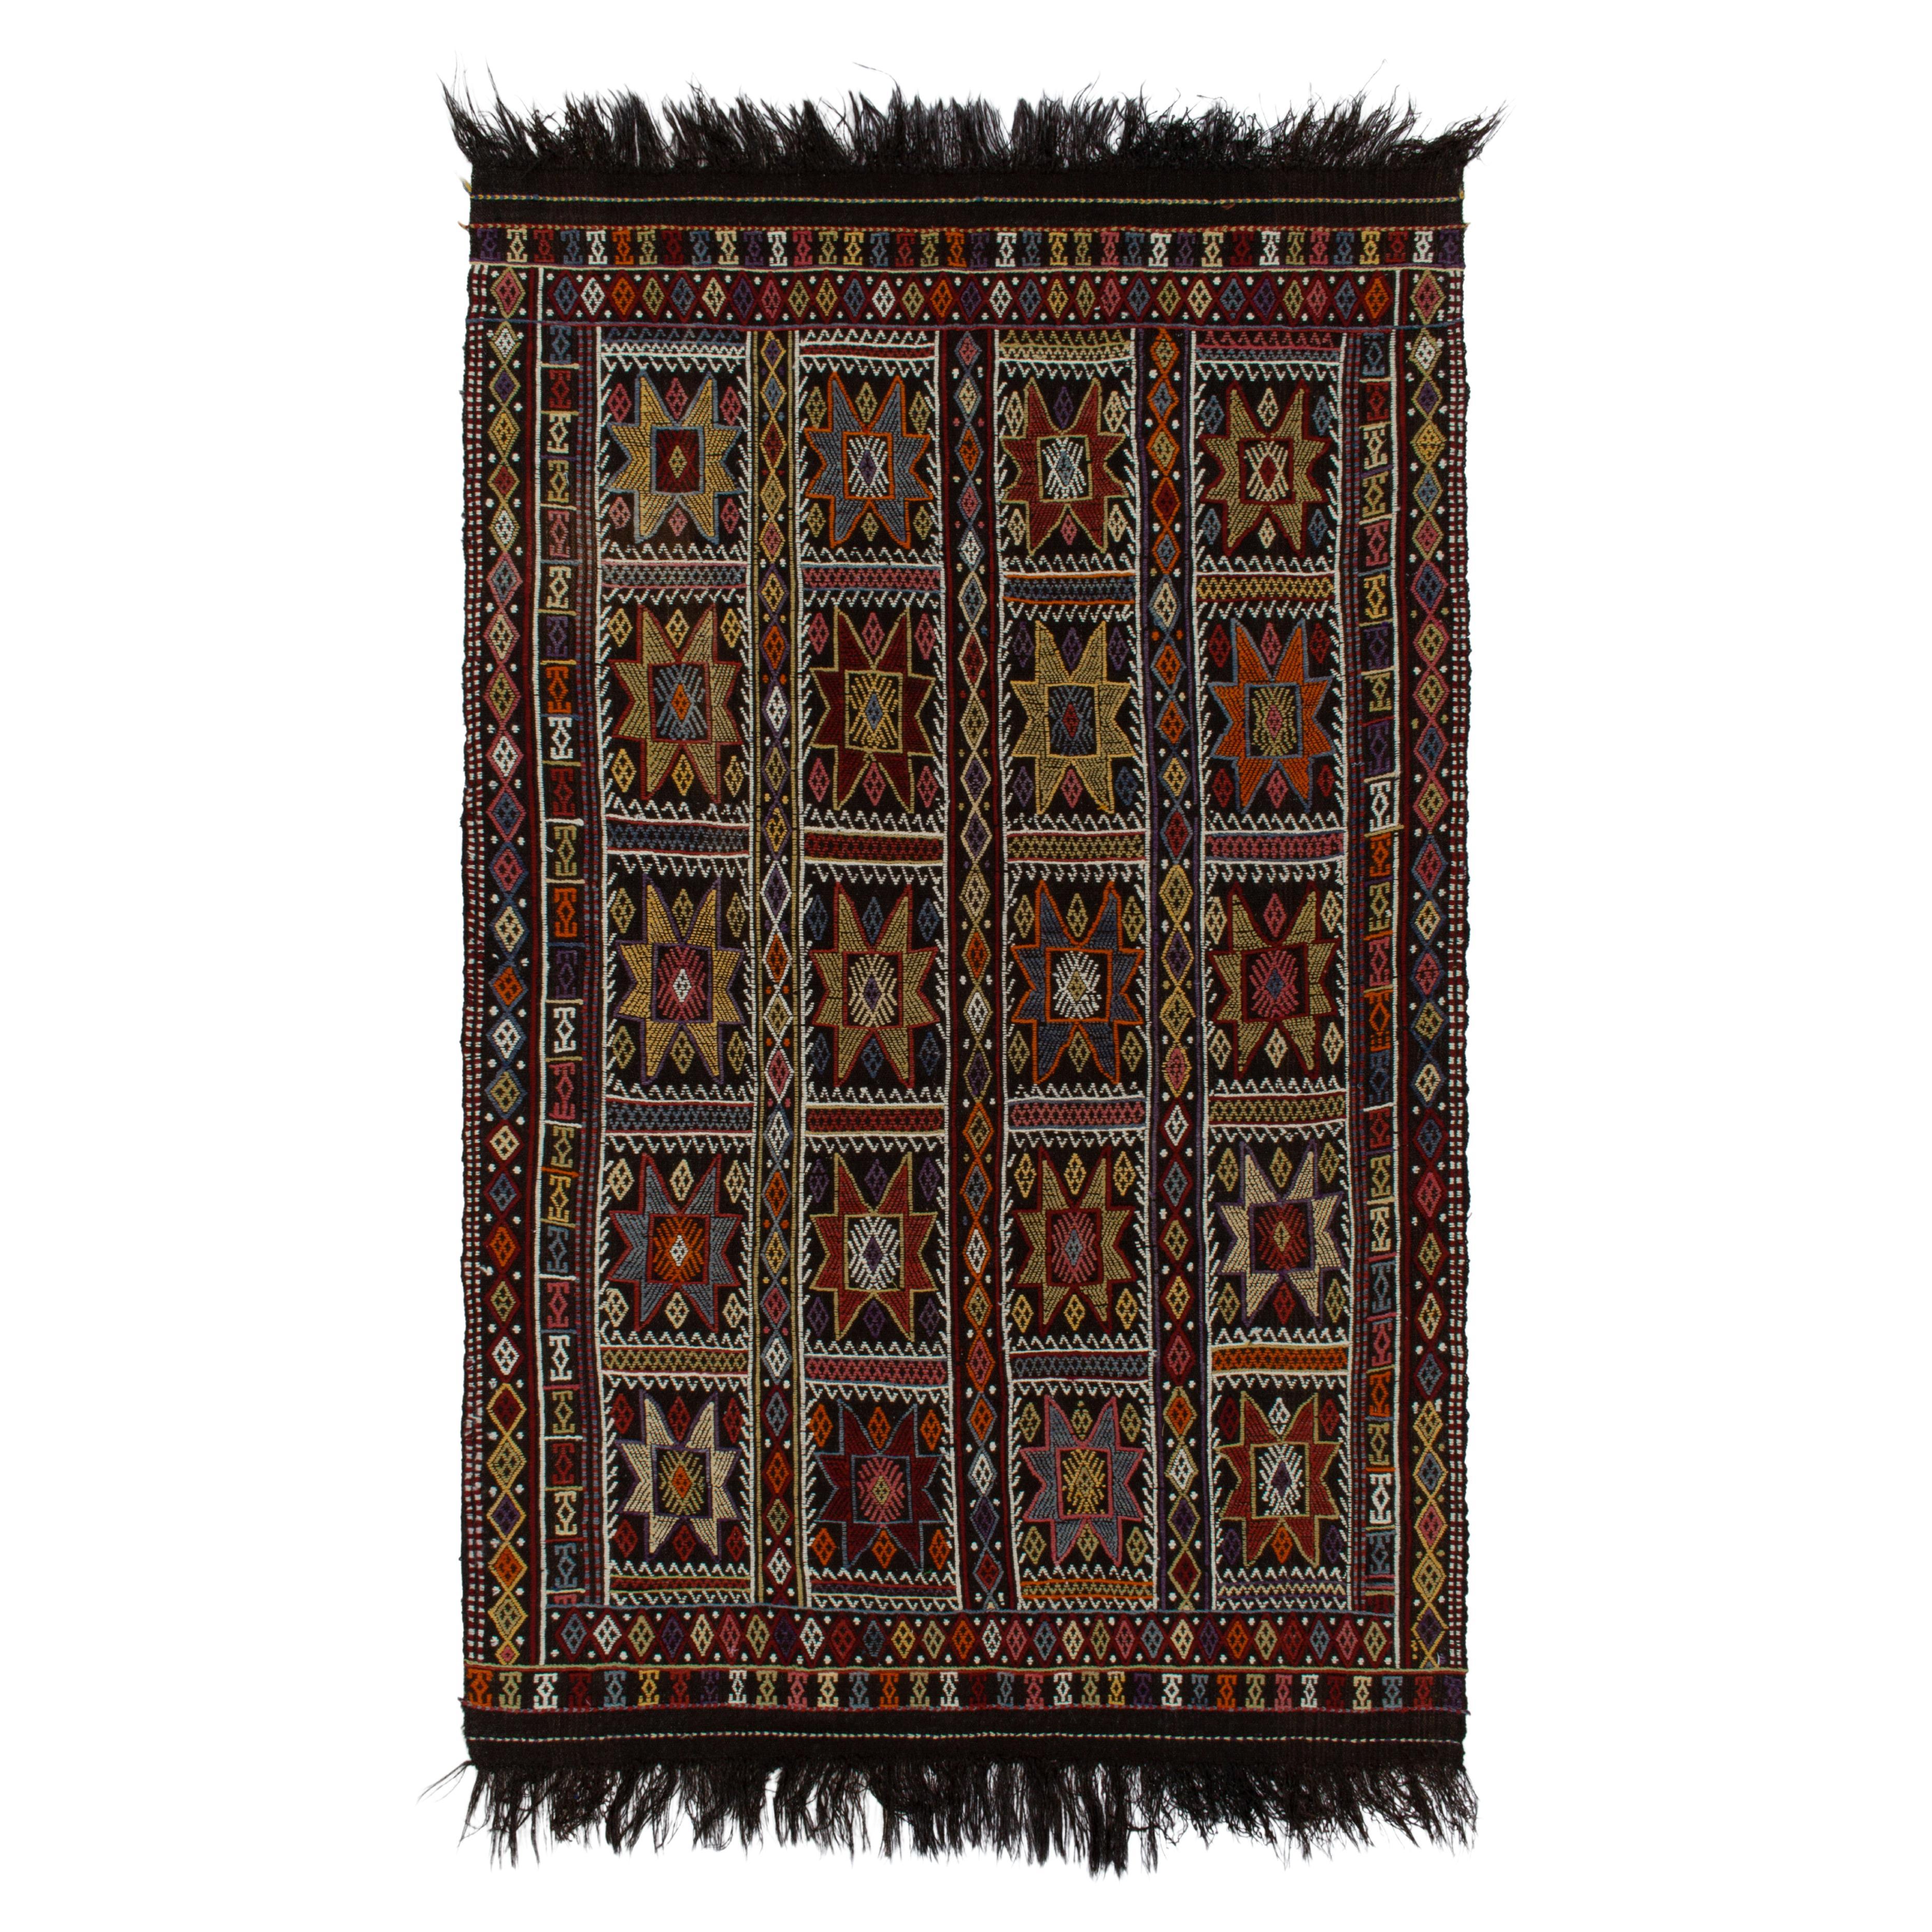 1950er Jahre Vintage-Kelim-Stammesteppich in Schwarz, mehrfarbig und geometrisch von Teppich & Kelim